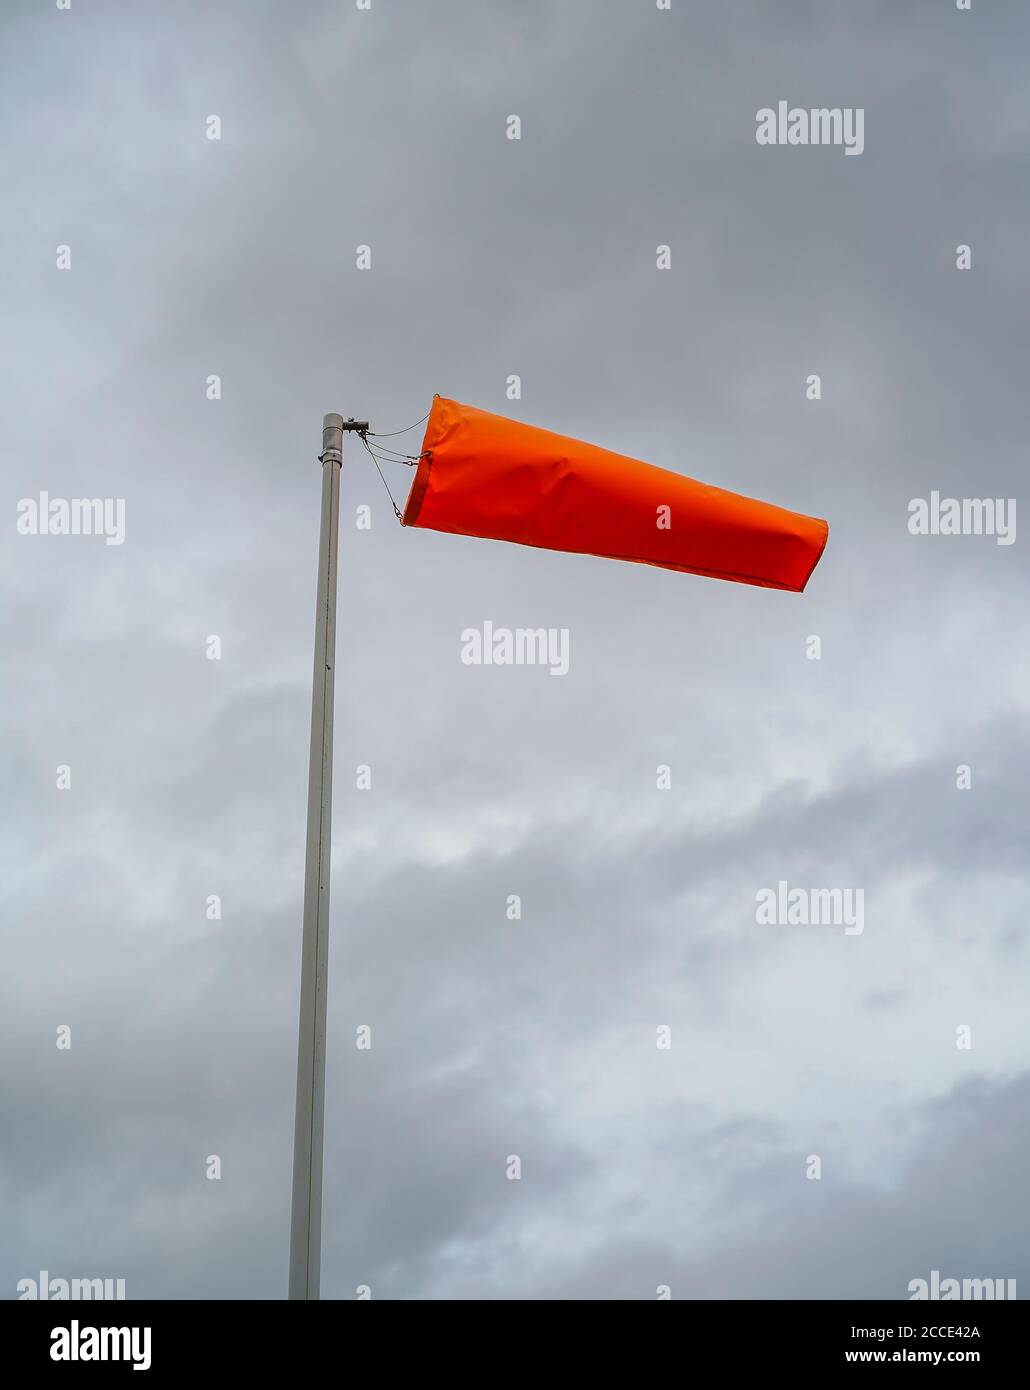 Bewdley, Royaume-Uni. 21 août 2020. Météo au Royaume-Uni : vents violents qui soufflent à travers une chaussette à vent orange avec un ciel couvert de nuages gris dans une piscine à voile du Worcestershire. Credit Lee Hudson/Alay Live News Banque D'Images